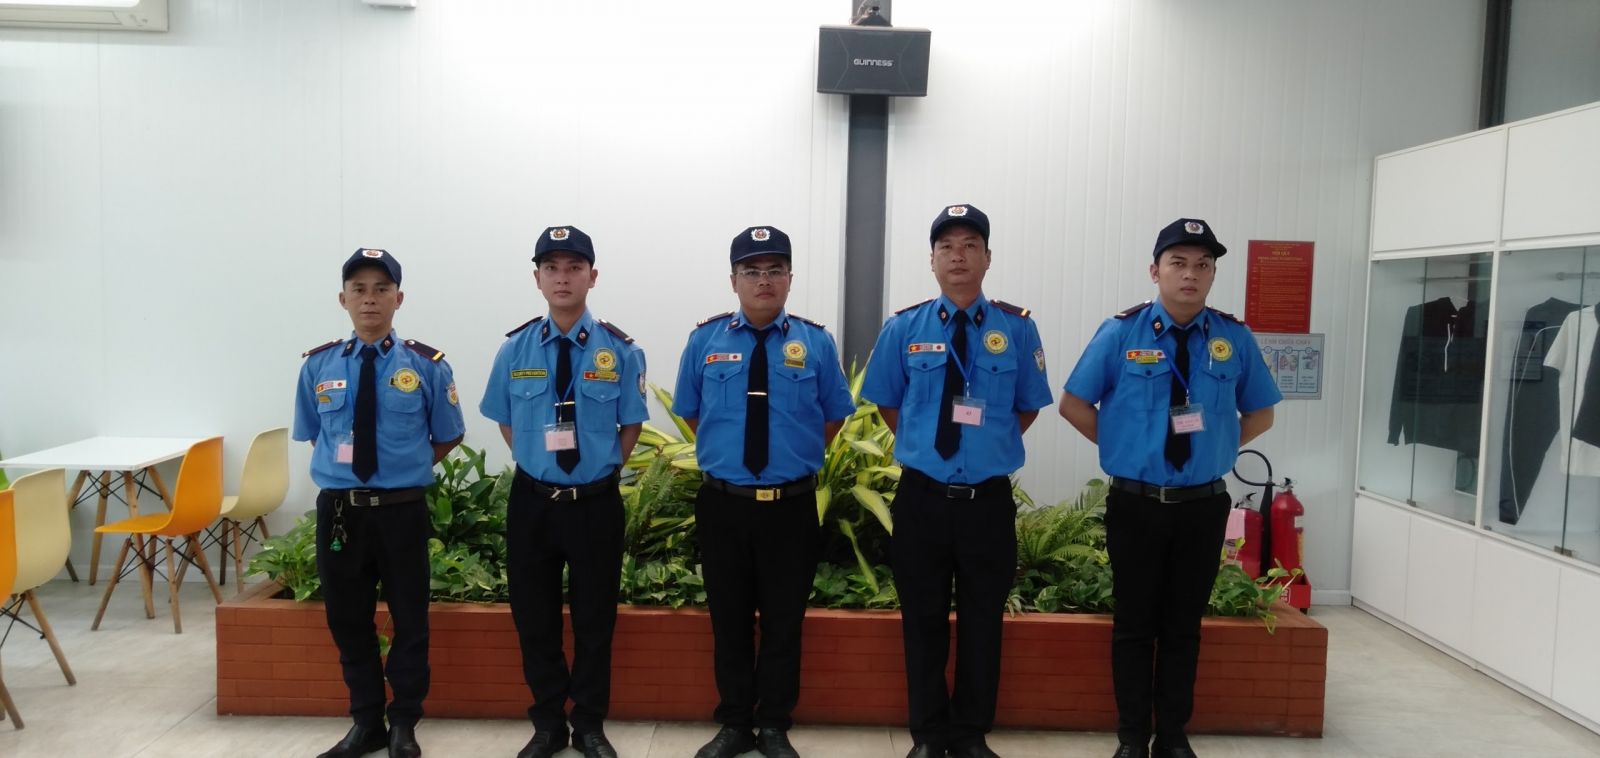 Dịch vụ bảo vệ tết TPHCM tại Bảo Vệ Kiên Long Sài Gòn